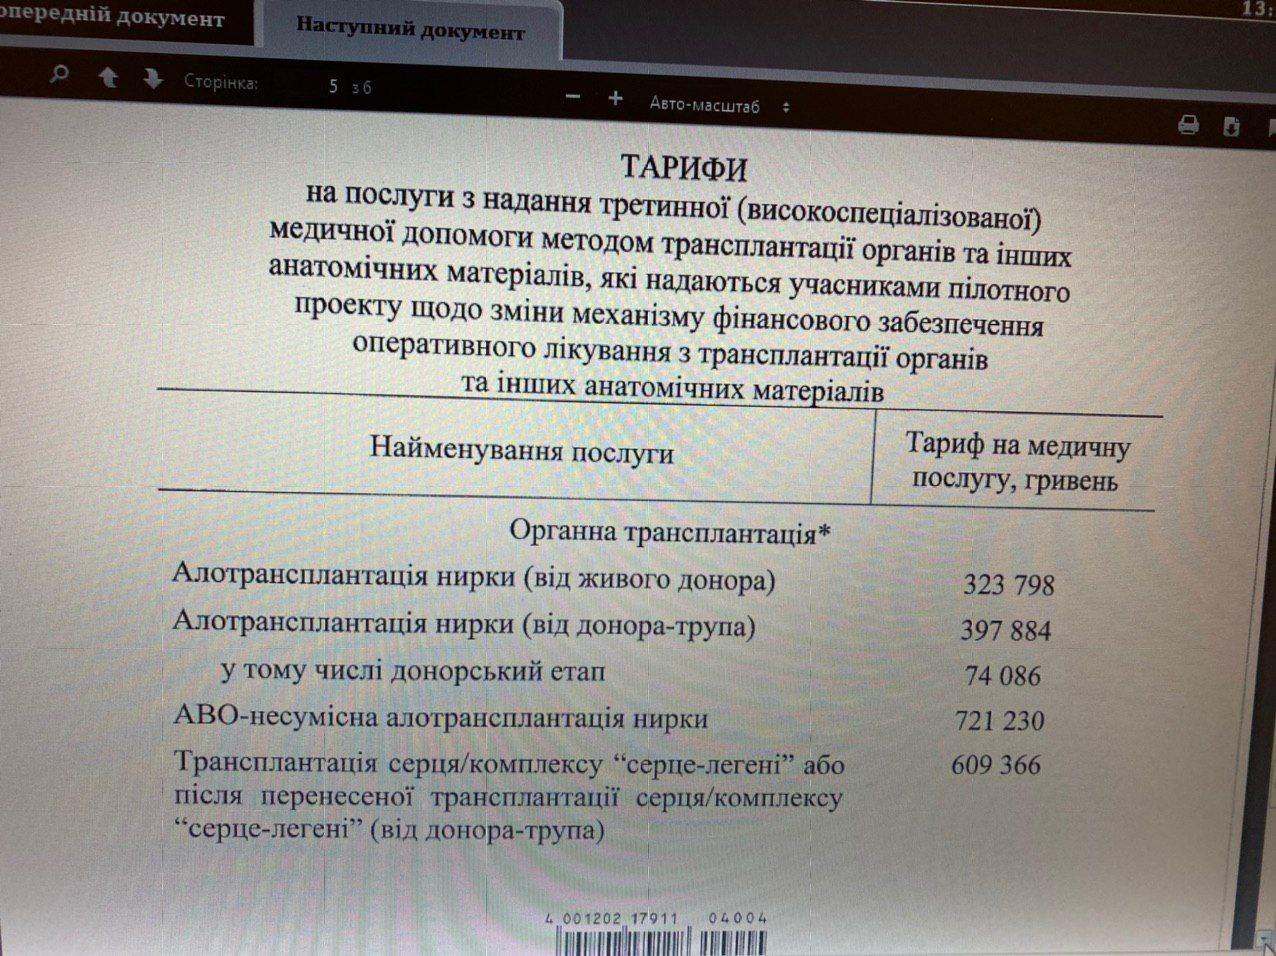 Кабмин утвердил цены на пересадку органов в Украине. Фото: Гончаренко